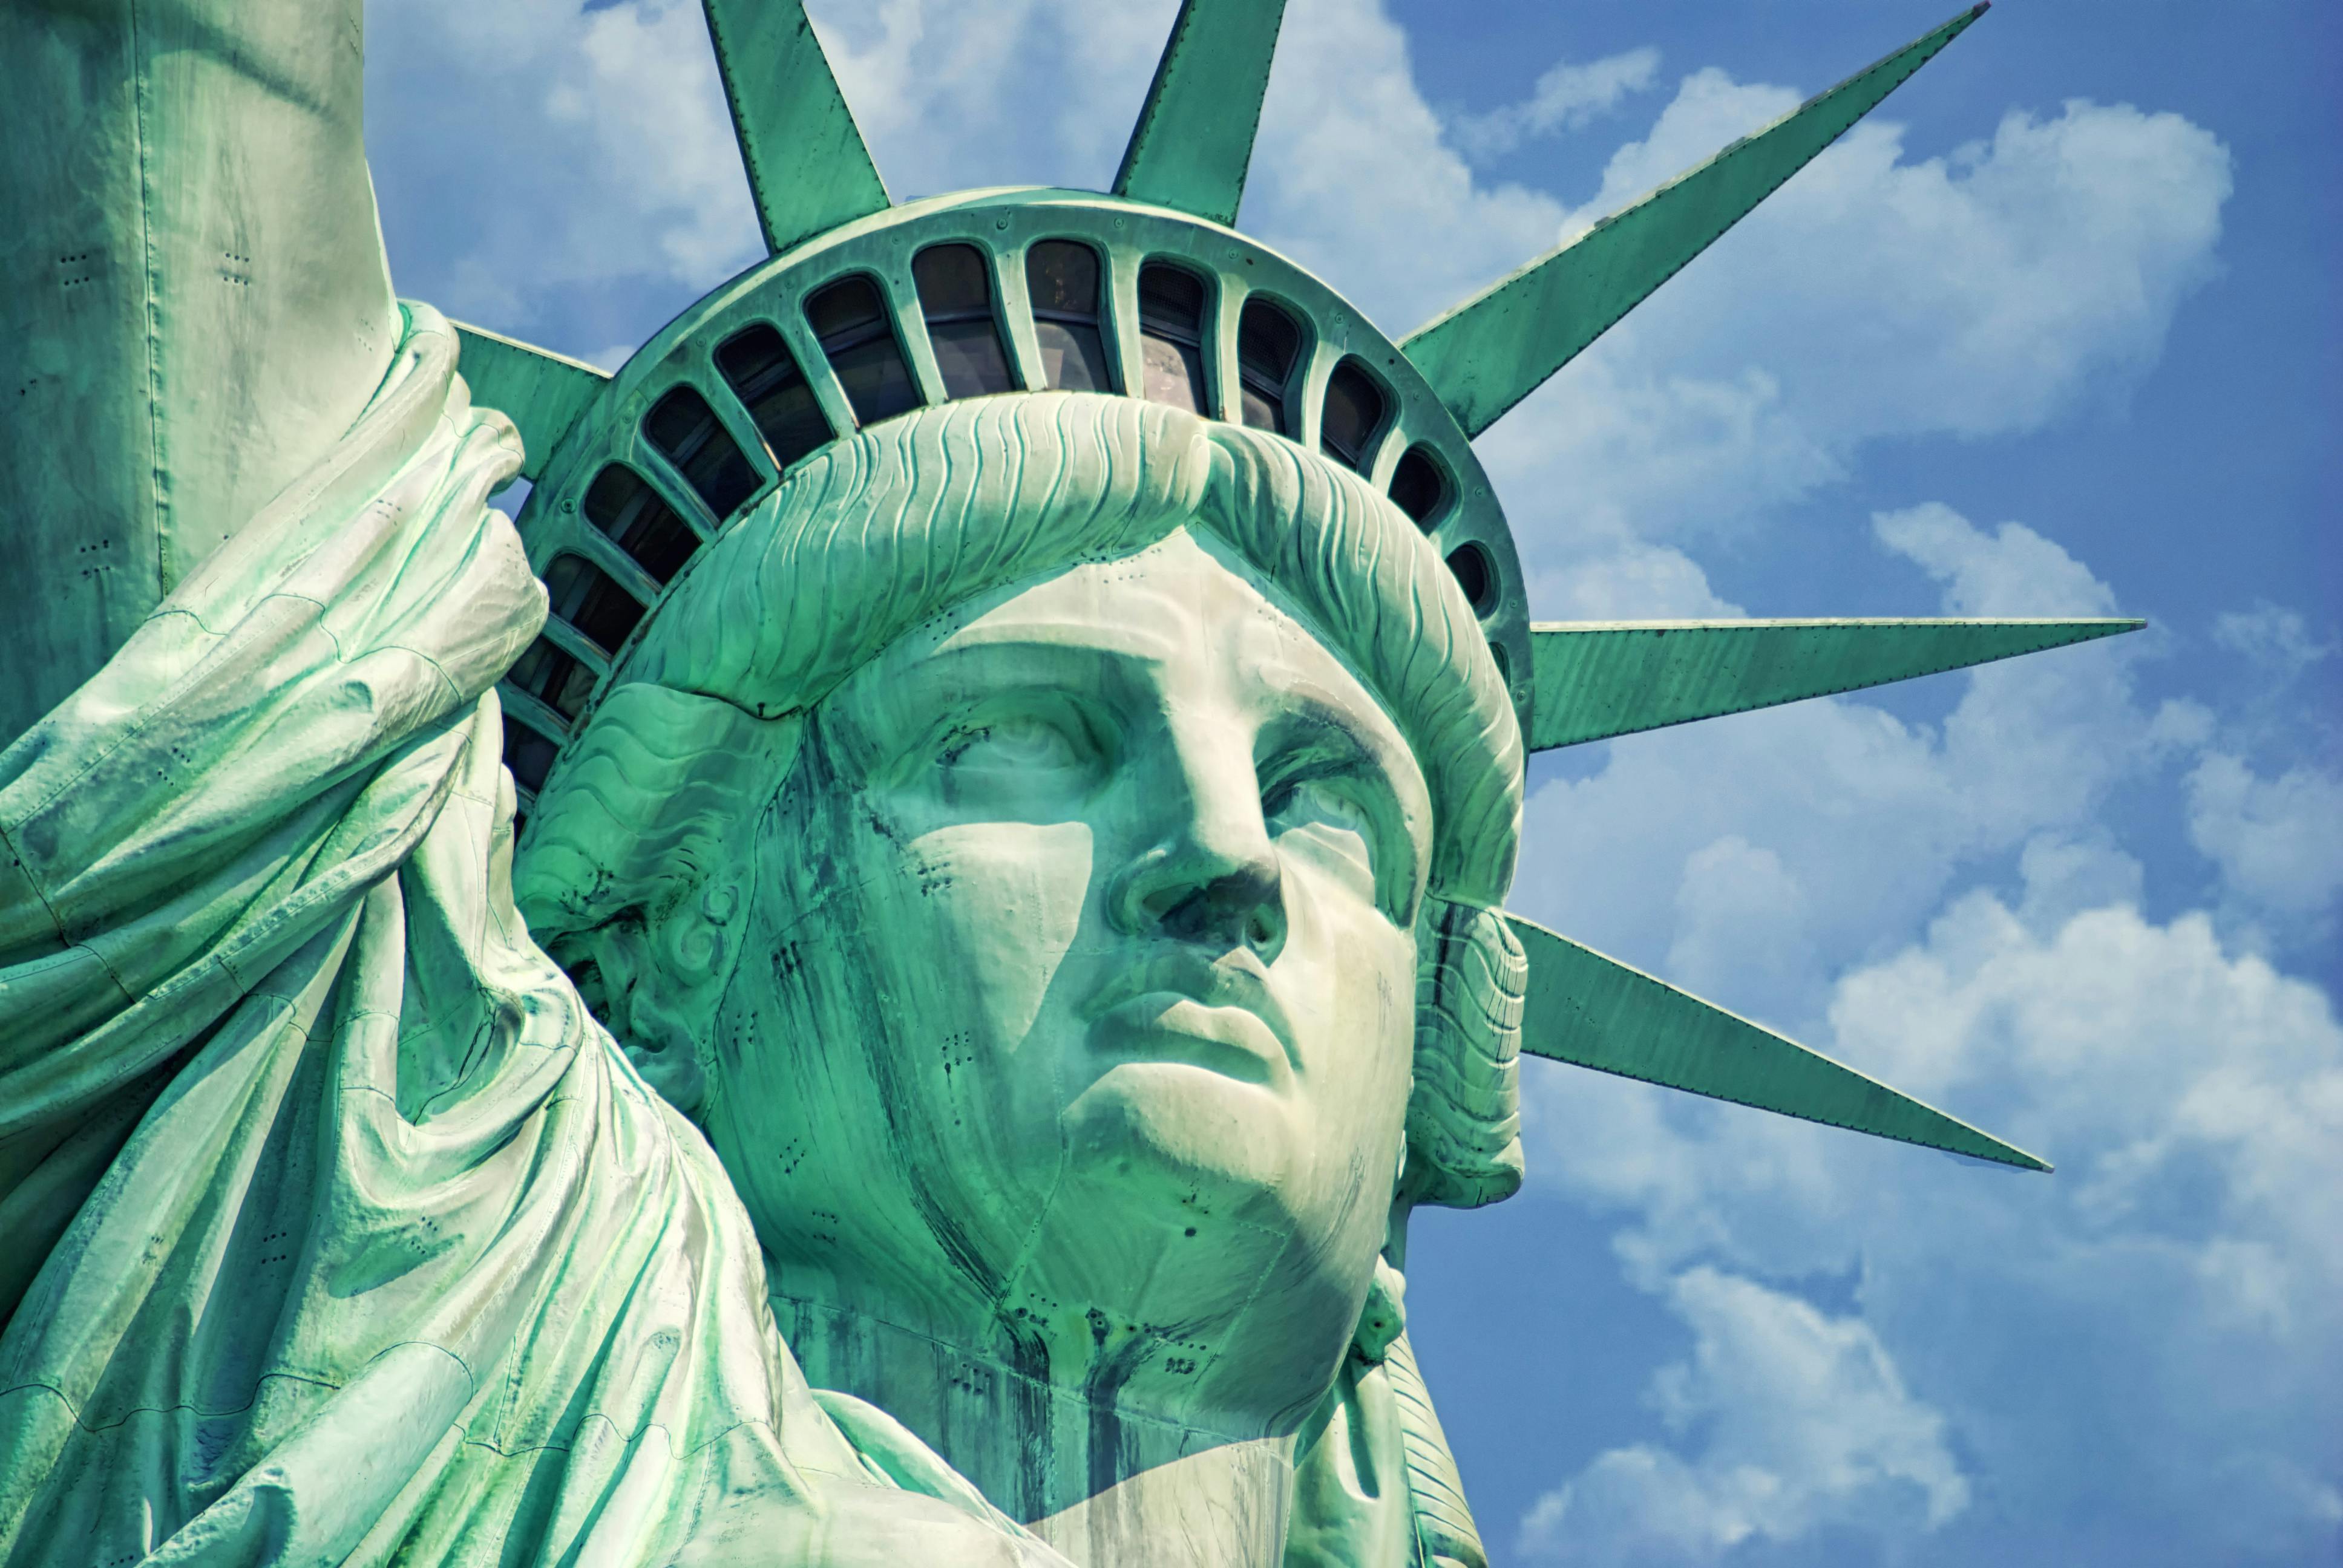 Musée-mémorial du 11 septembre et croisière Lady Liberty à New York